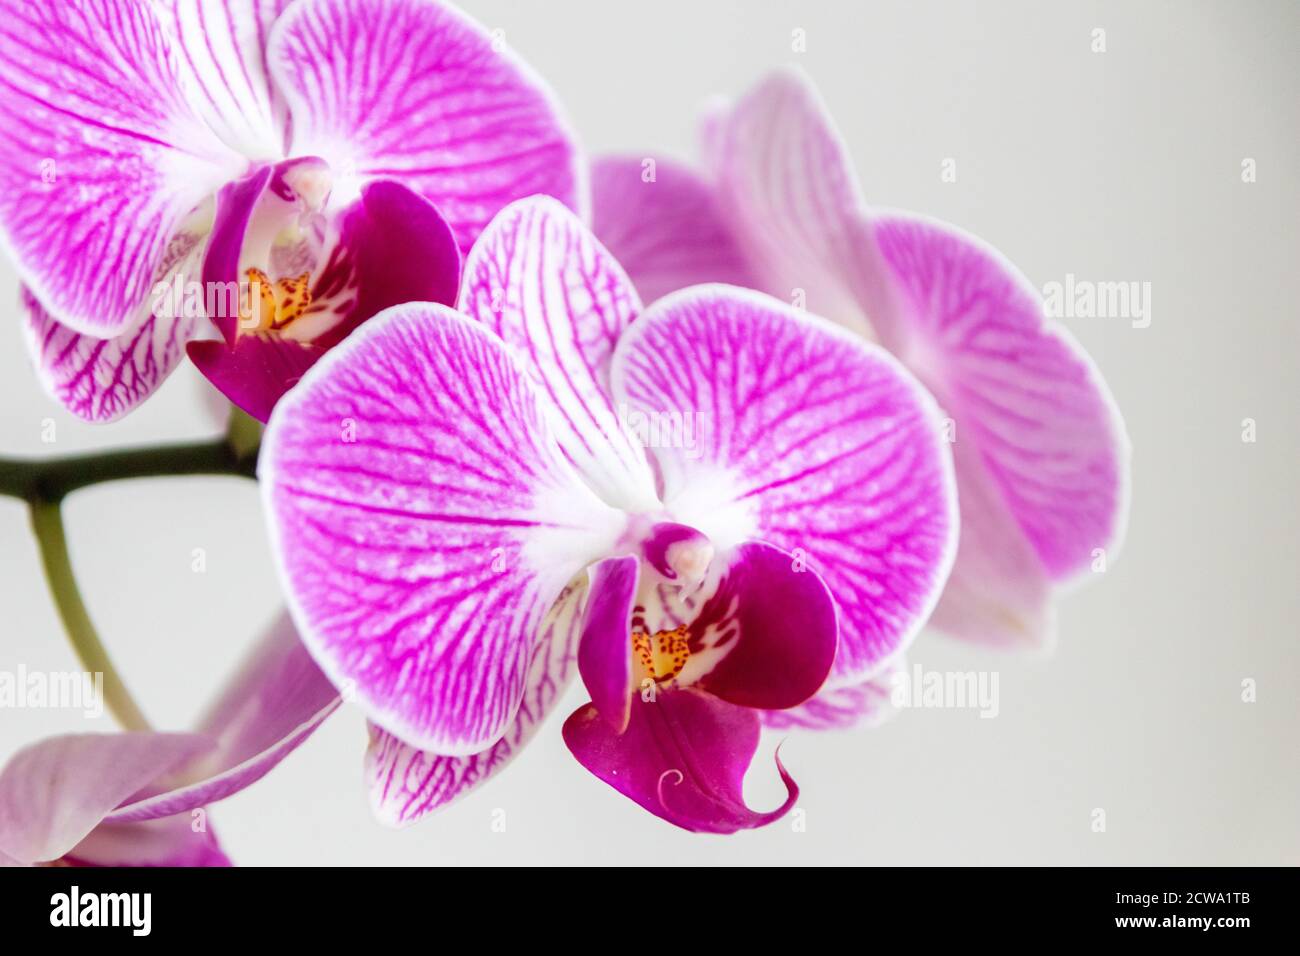 Bella orchidea rosa fiore e gemma latente con bella viola e viola petali e un po 'di miele fresco per insetti come le api e bumblebees bello Foto Stock